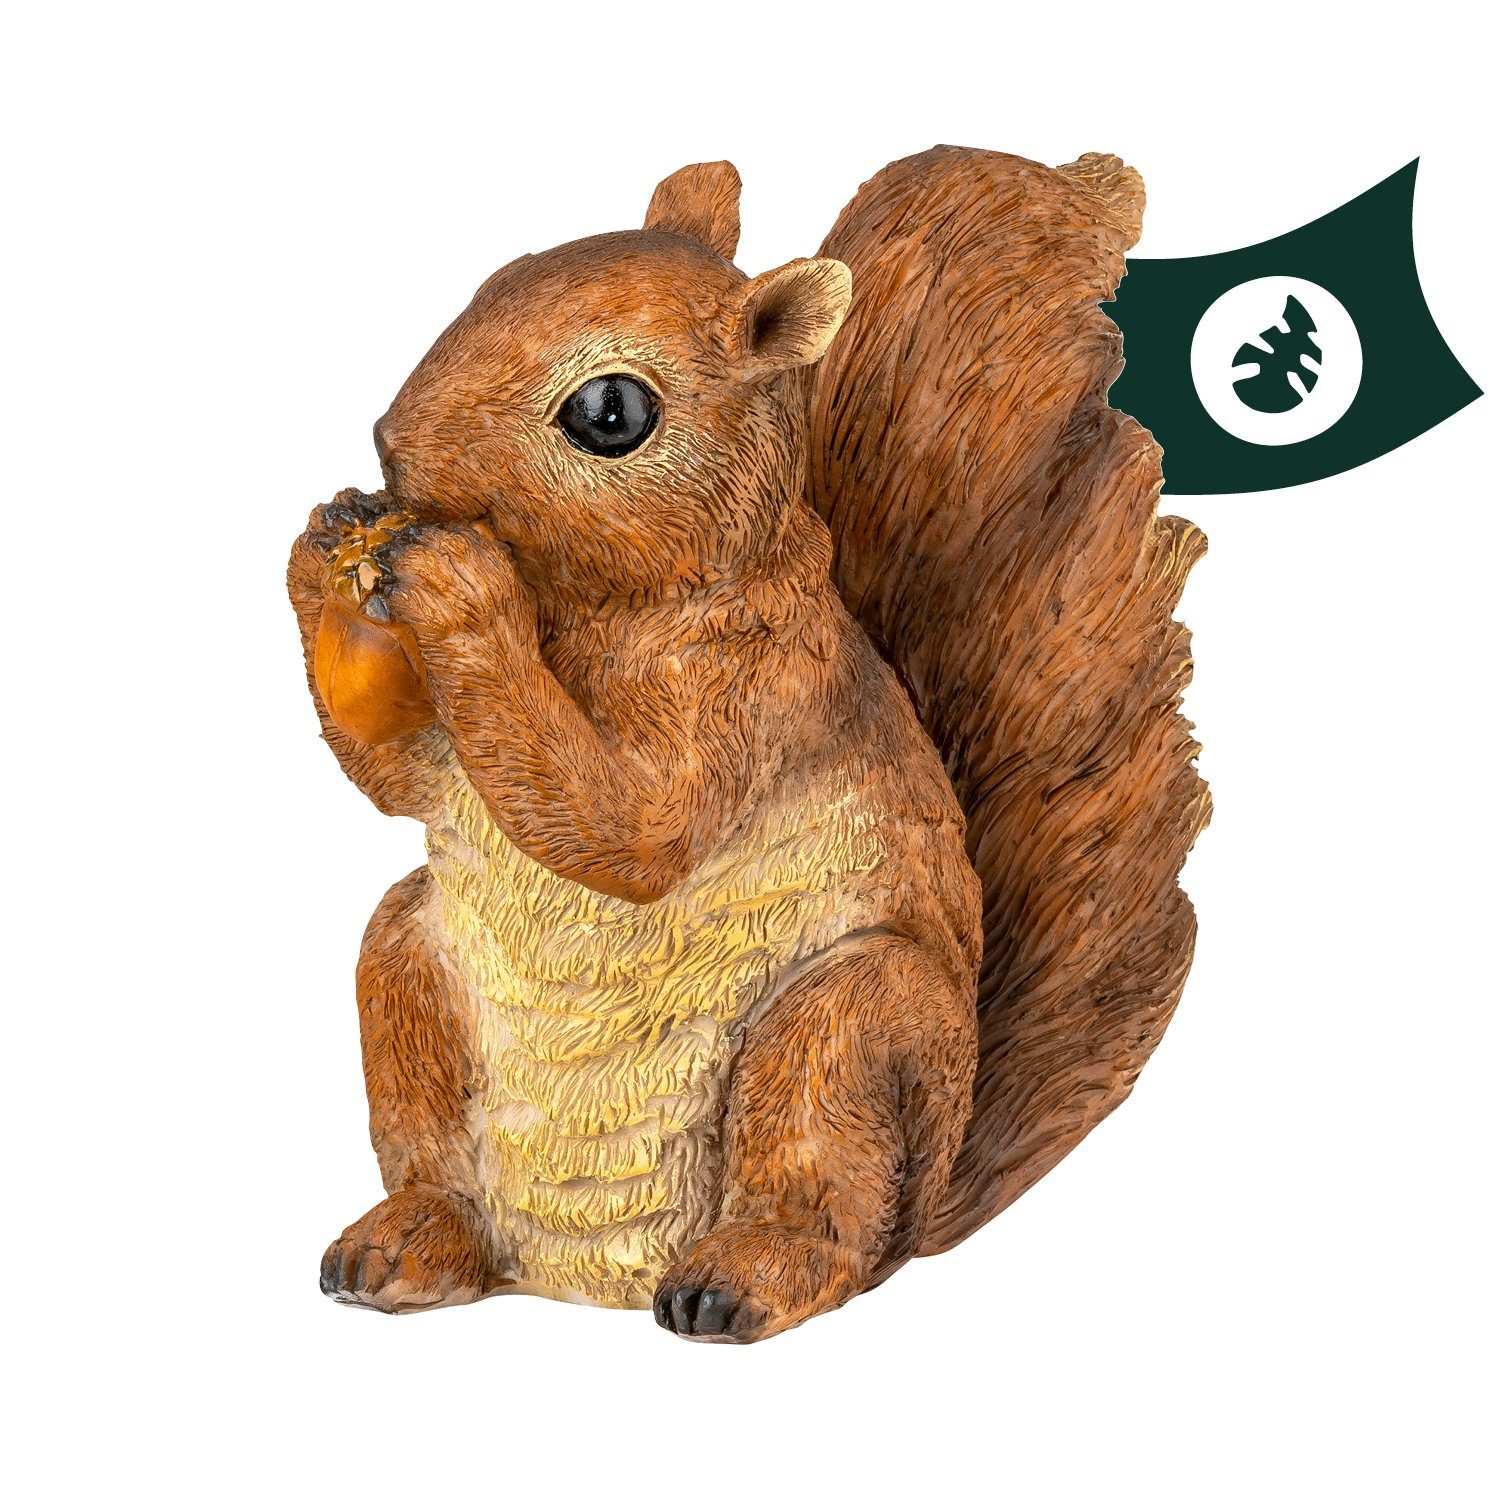 VERDOBA Gartenfigur Eichhörnchen Figur mit Nuss Gartendeko - wetterfeste Gartenfigur Deko